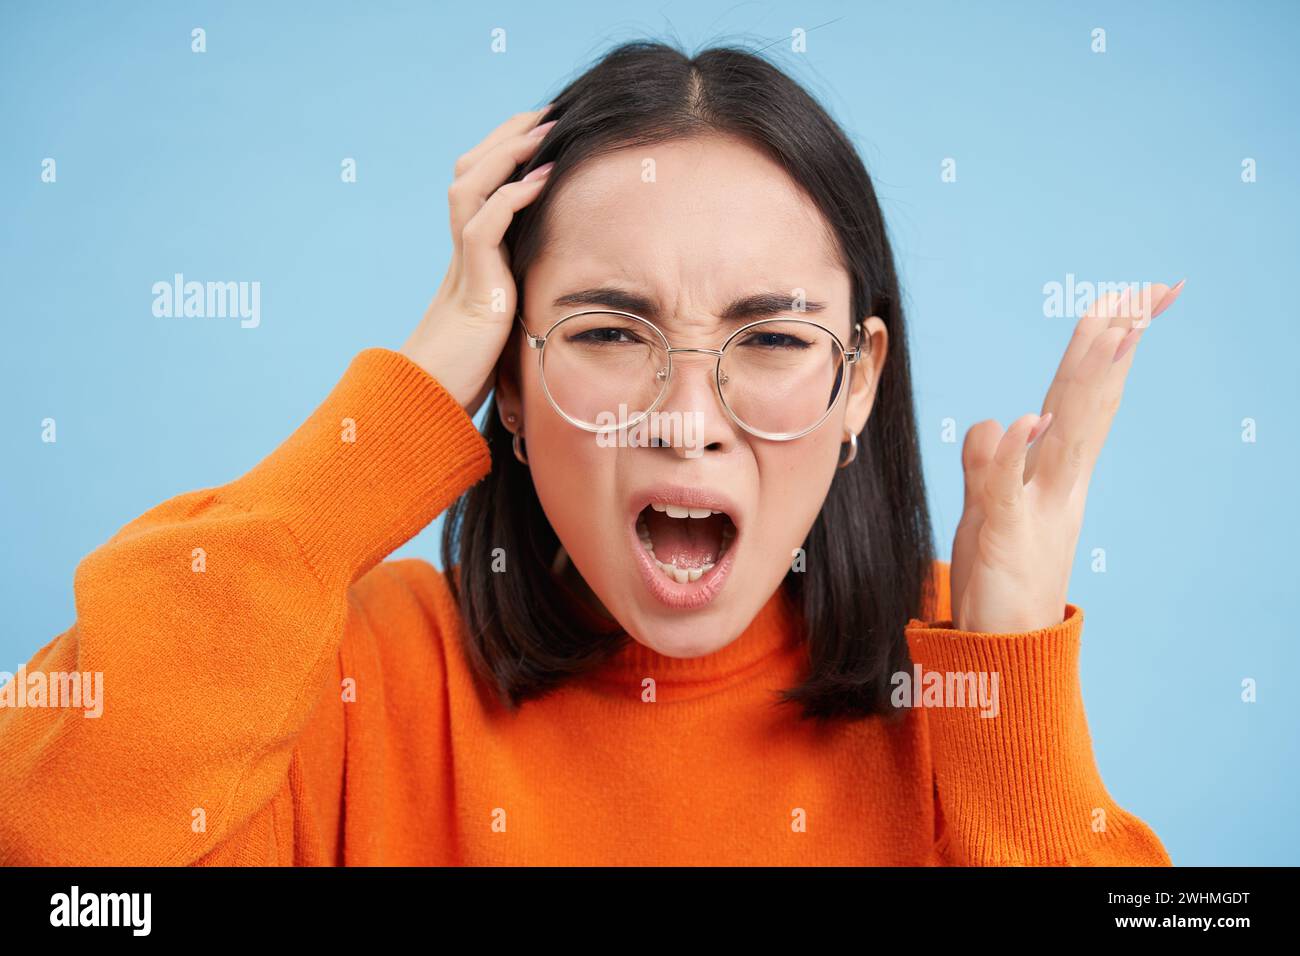 Ritratto di una giovane donna asiatica in occhiali, che litiga, urla e sembra infastidita, in piedi su sfondo blu Foto Stock